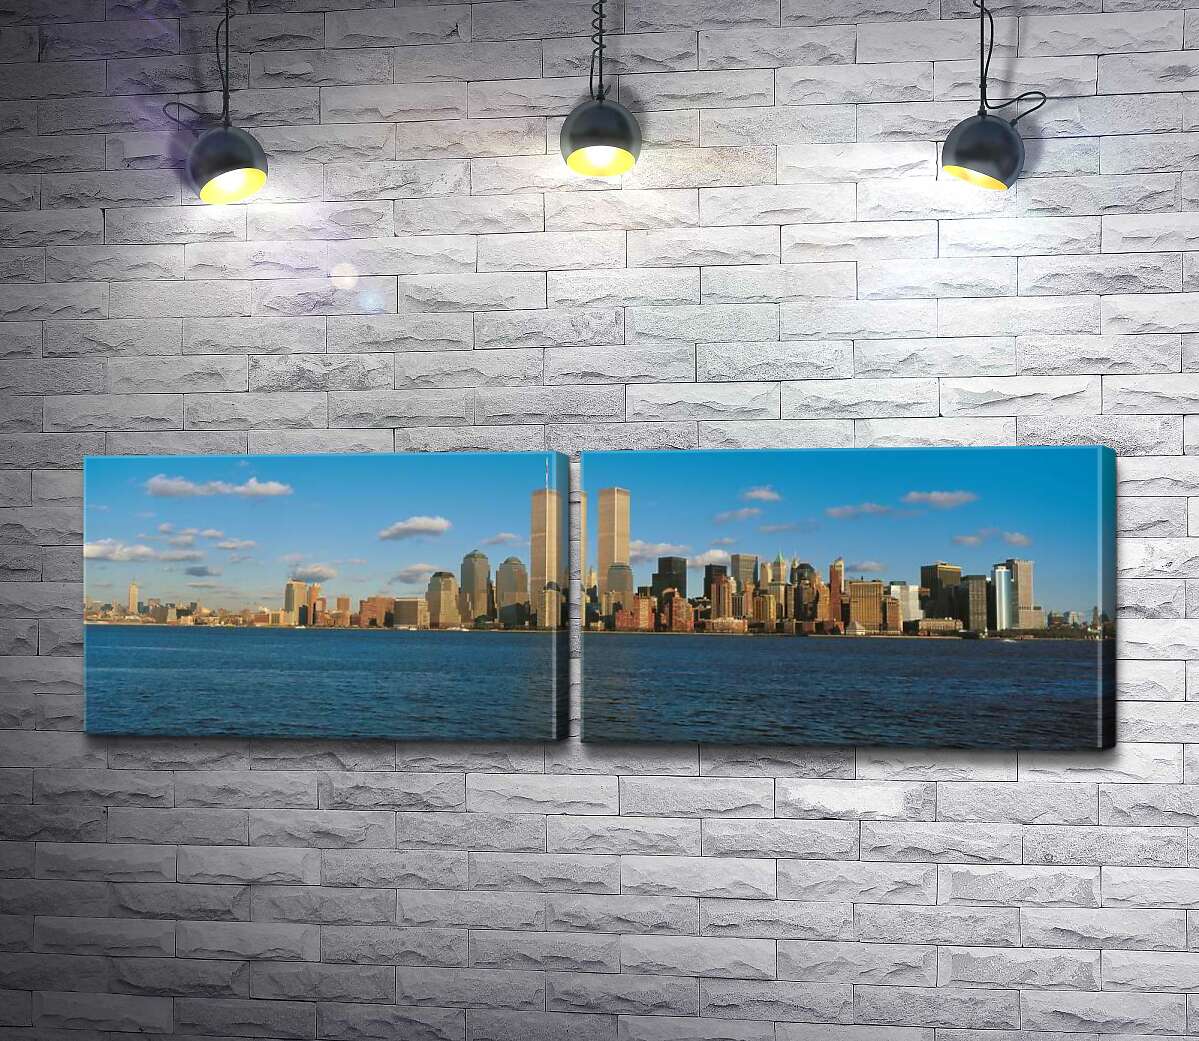 модульная картина Скопление небоскребов Манхэттена (Manhattan) за заливом Нью-Йорк (New York Bay)